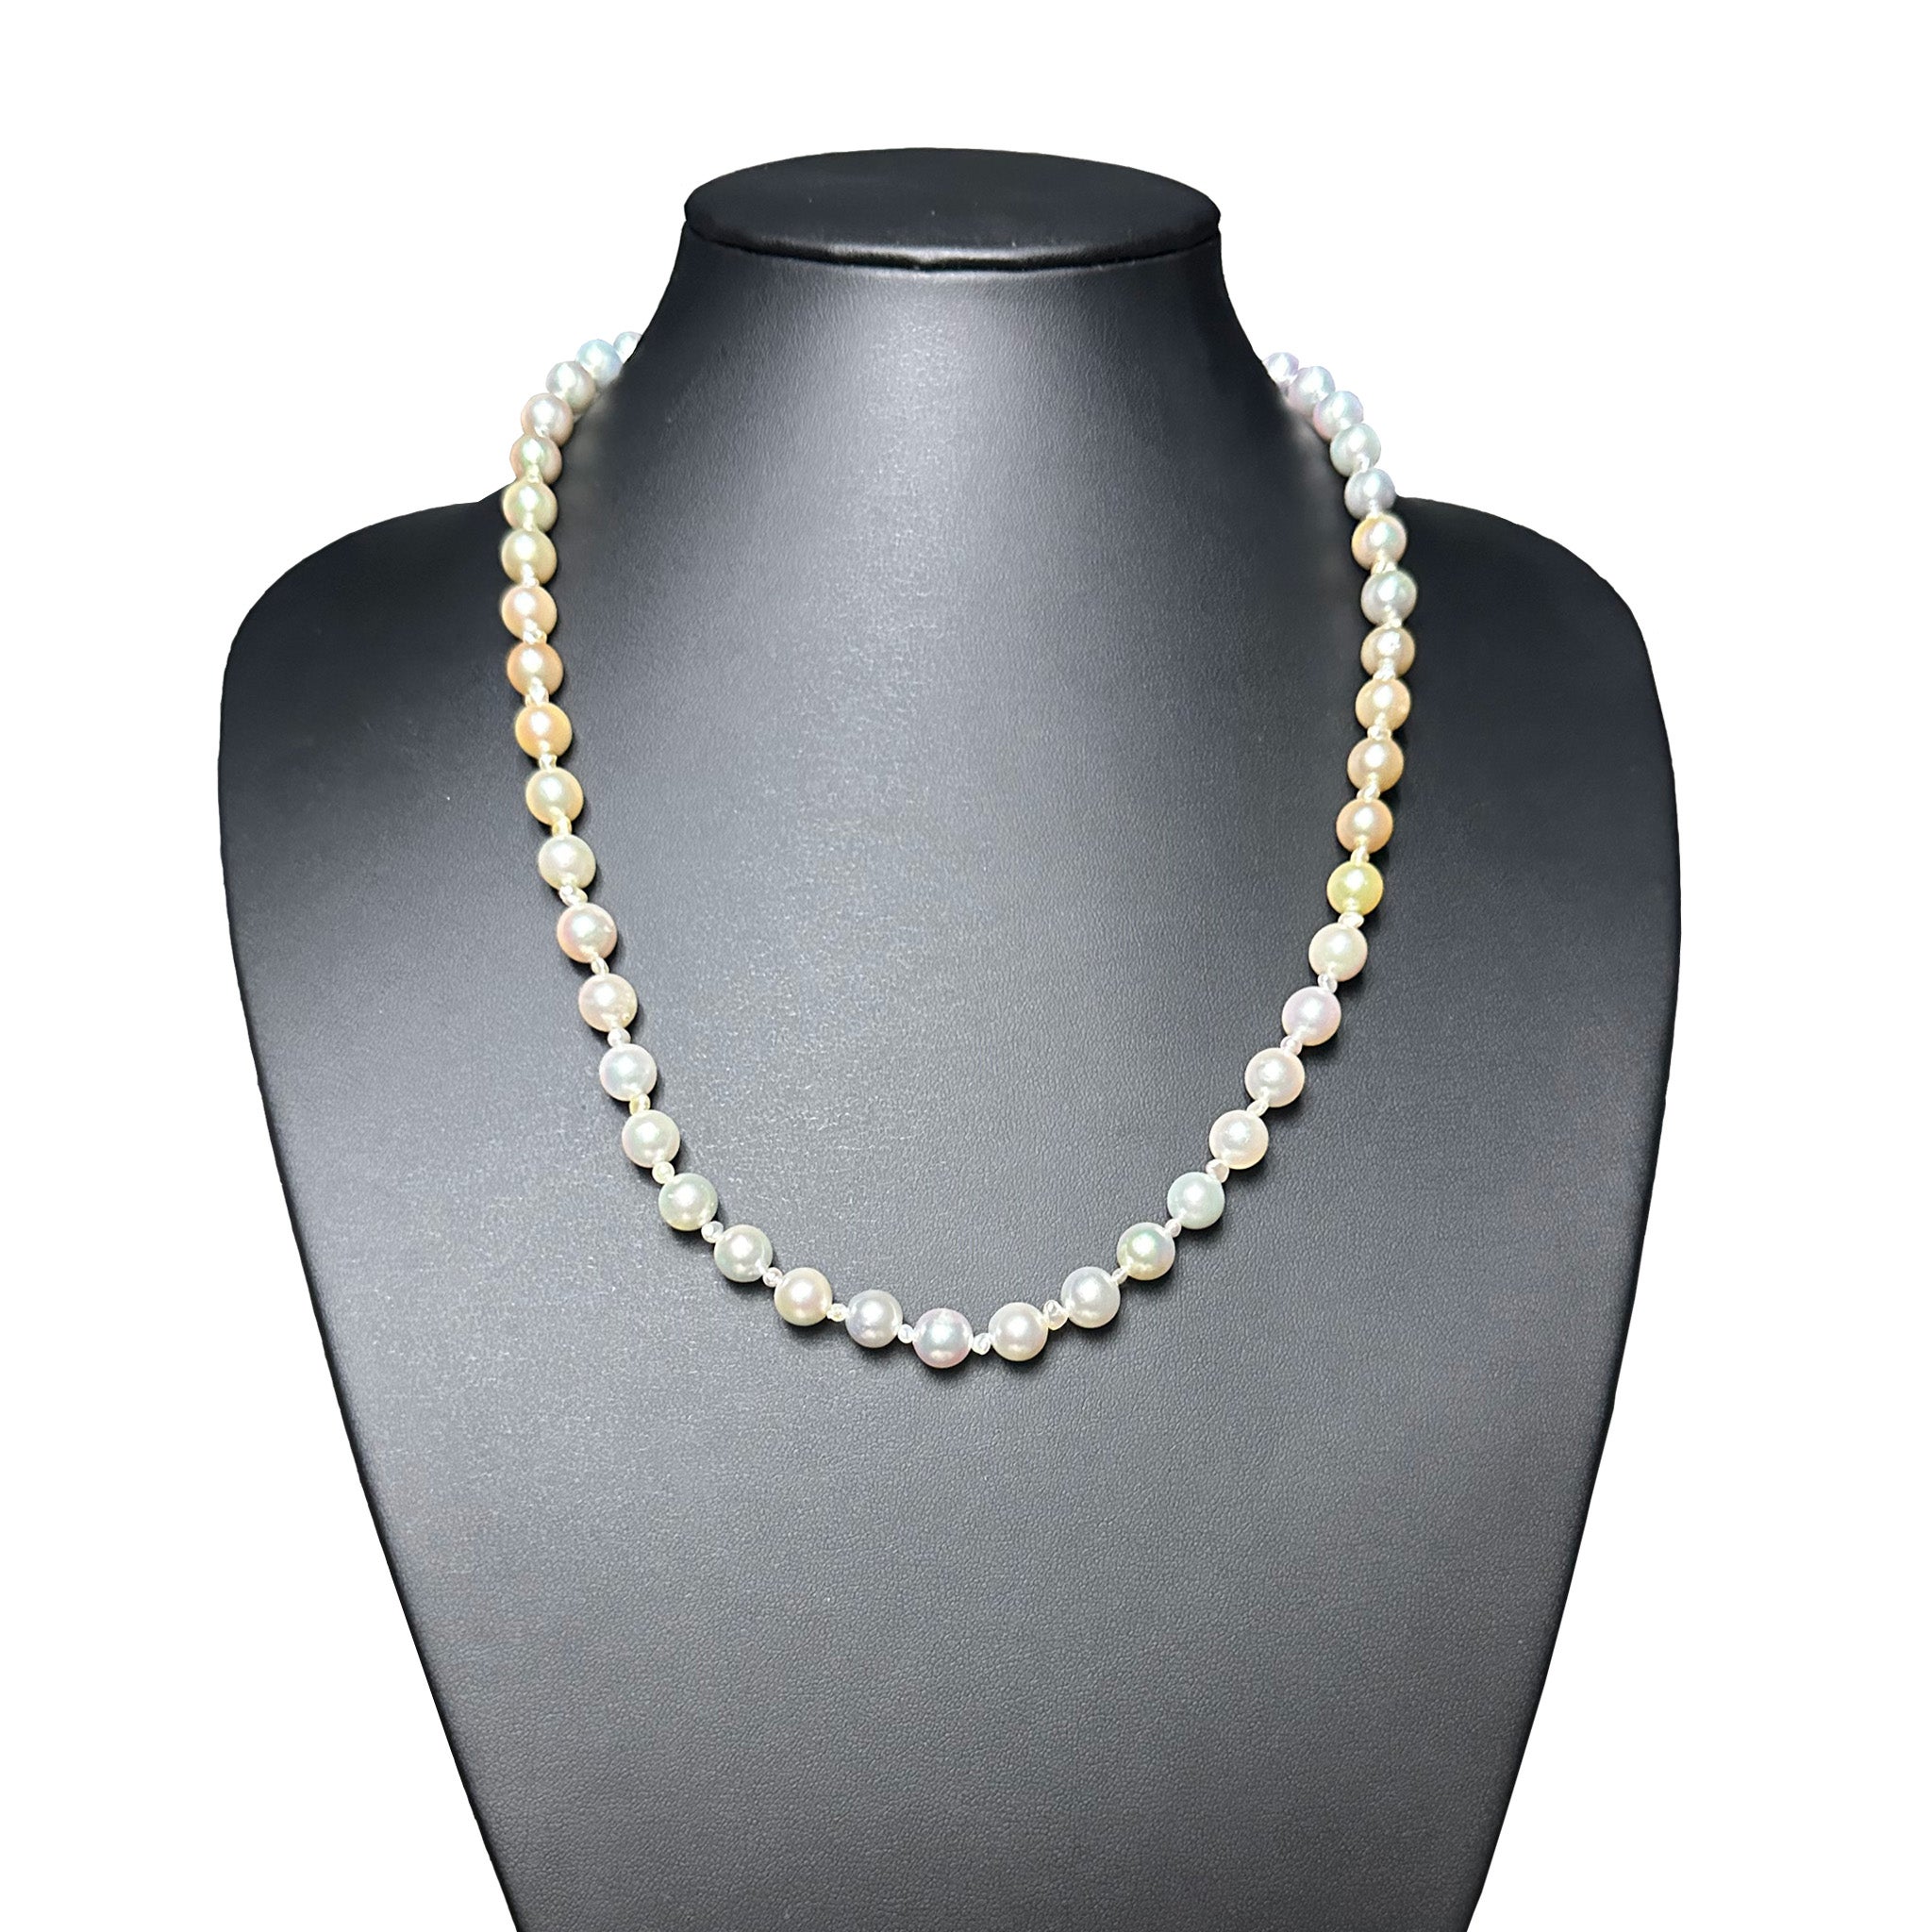 IRIS PARURE, Halskette mit Akoya-Perlen, nicht farbige und gebleichte Japanperlen, 8,00-8,50 mm